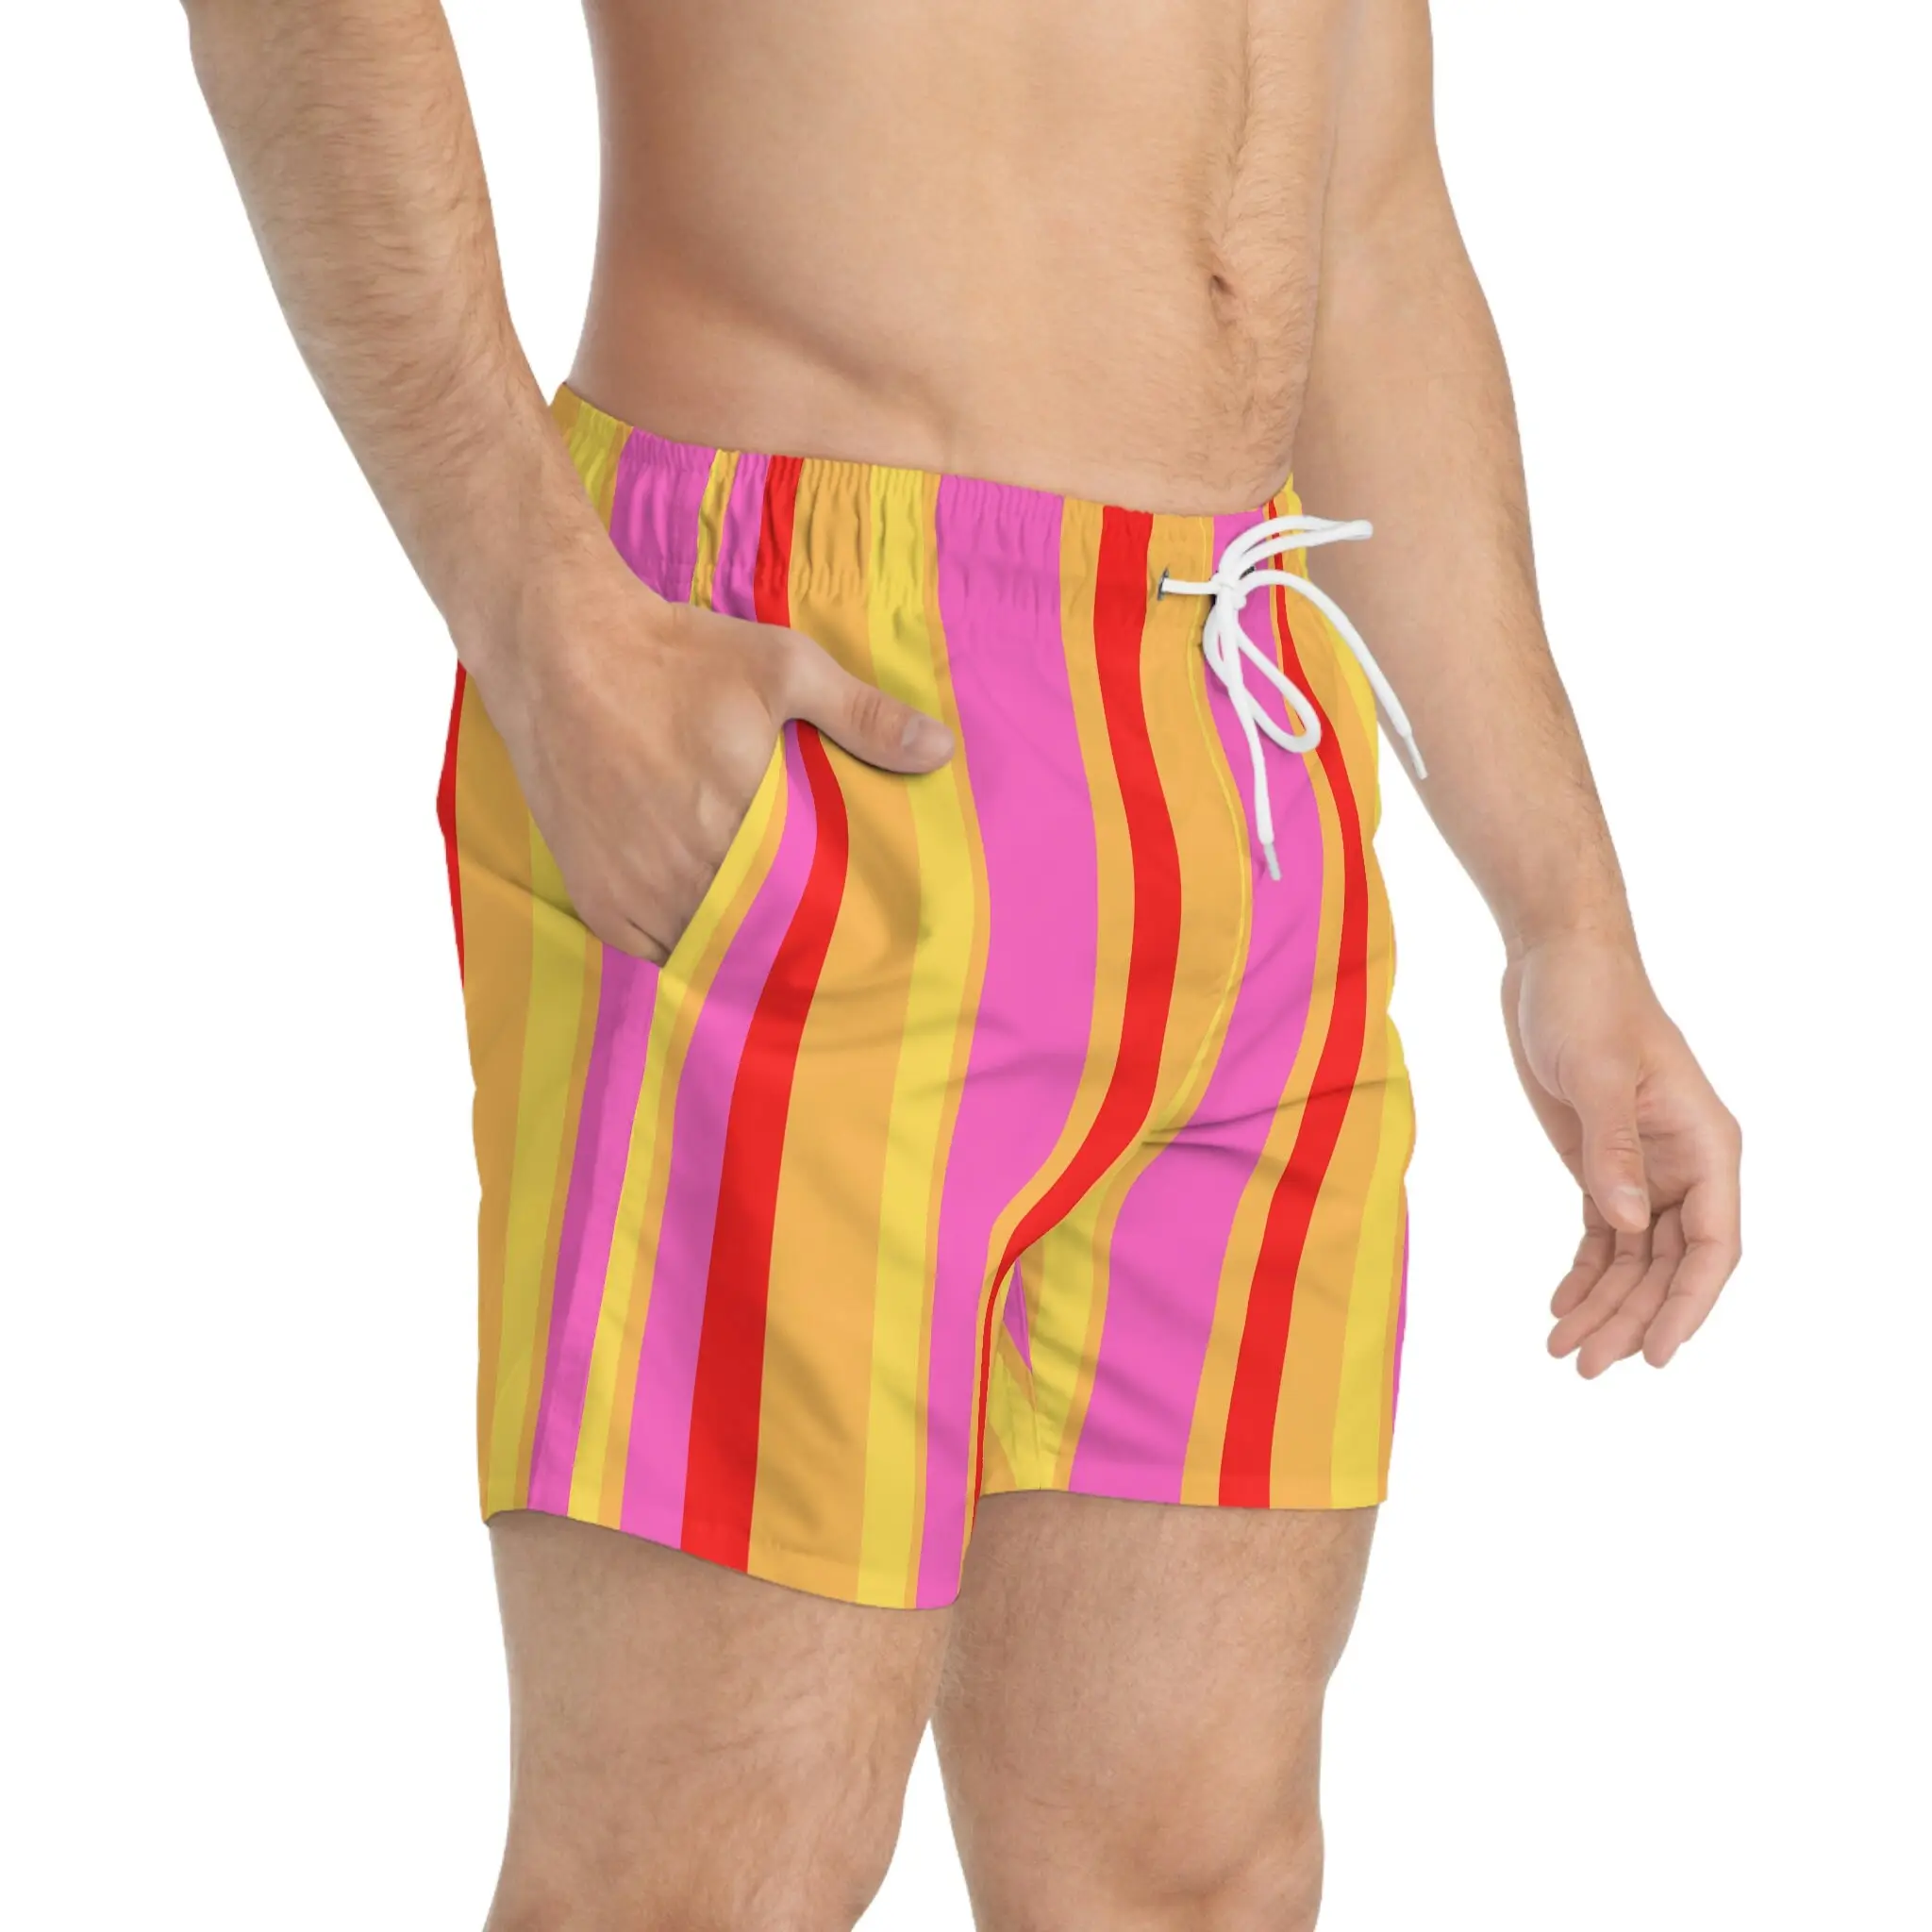 Erkek plaj şortu erkek mayoları için hızlı kuru Spandex sörf pantolon plaj kurulu şort erkek mayo sandıklar